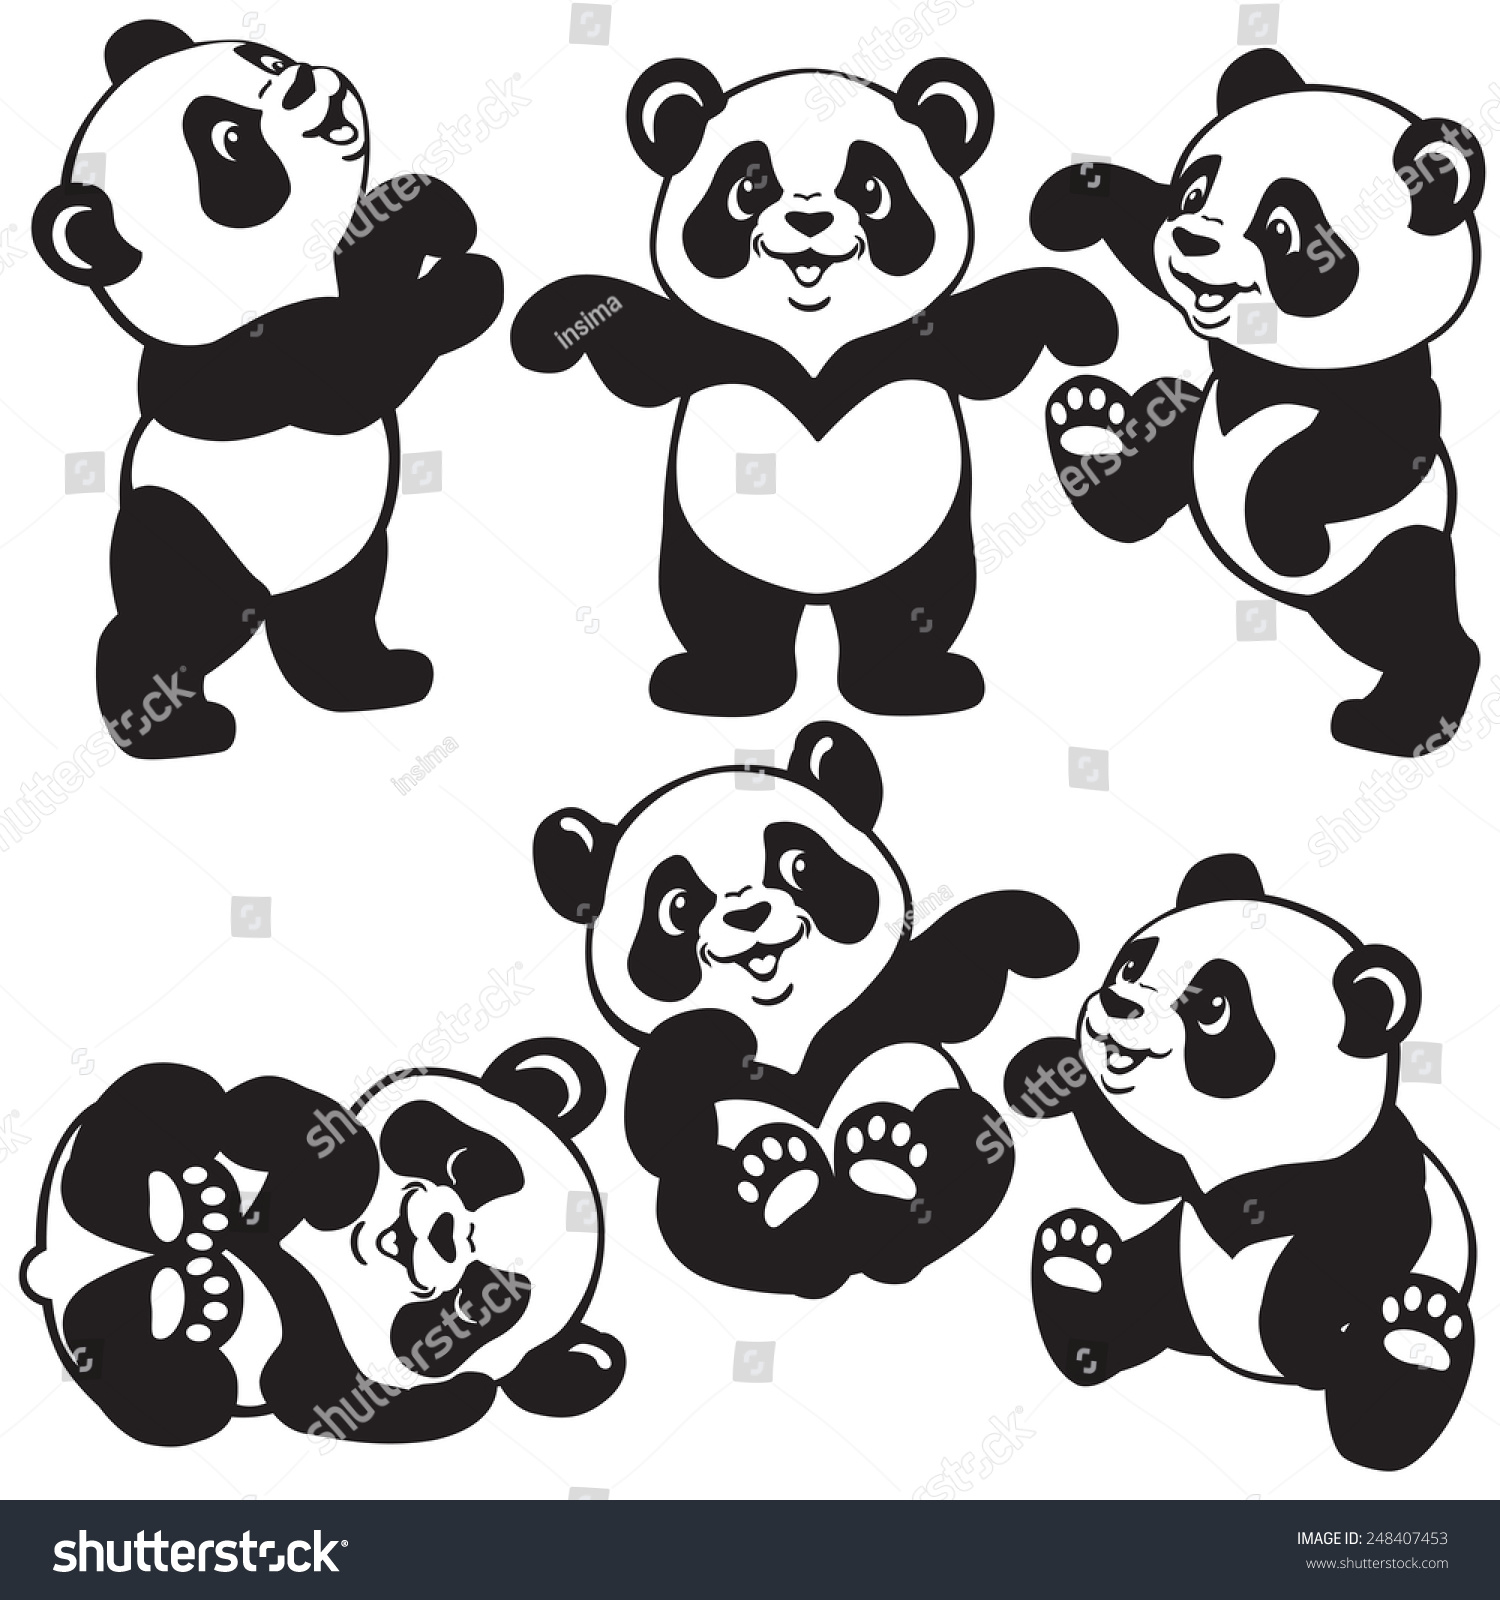 Set Cartoon Panda Bear Black White Vectores En Stock 248407453